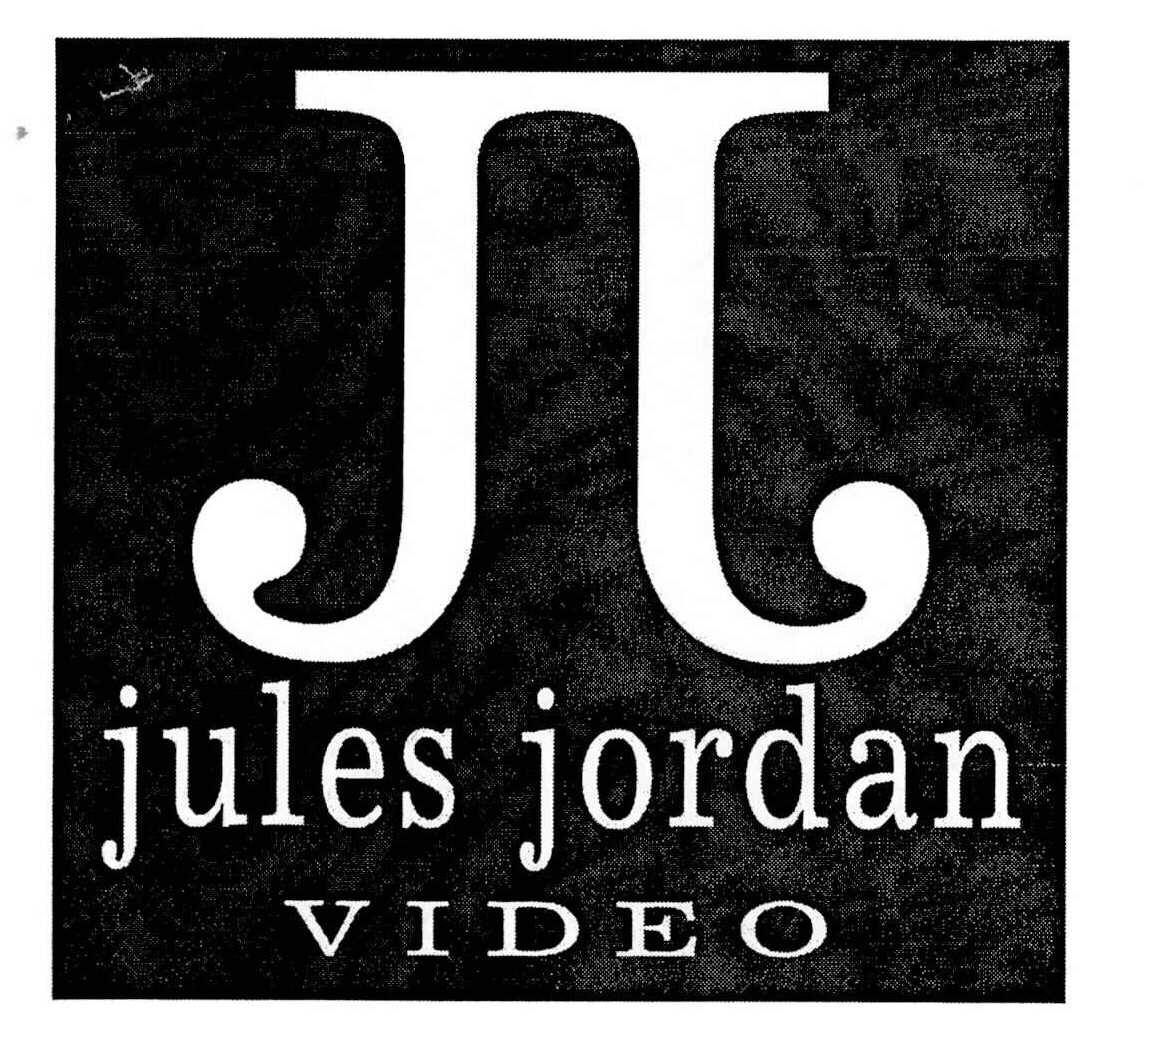 Jules jordan is who 